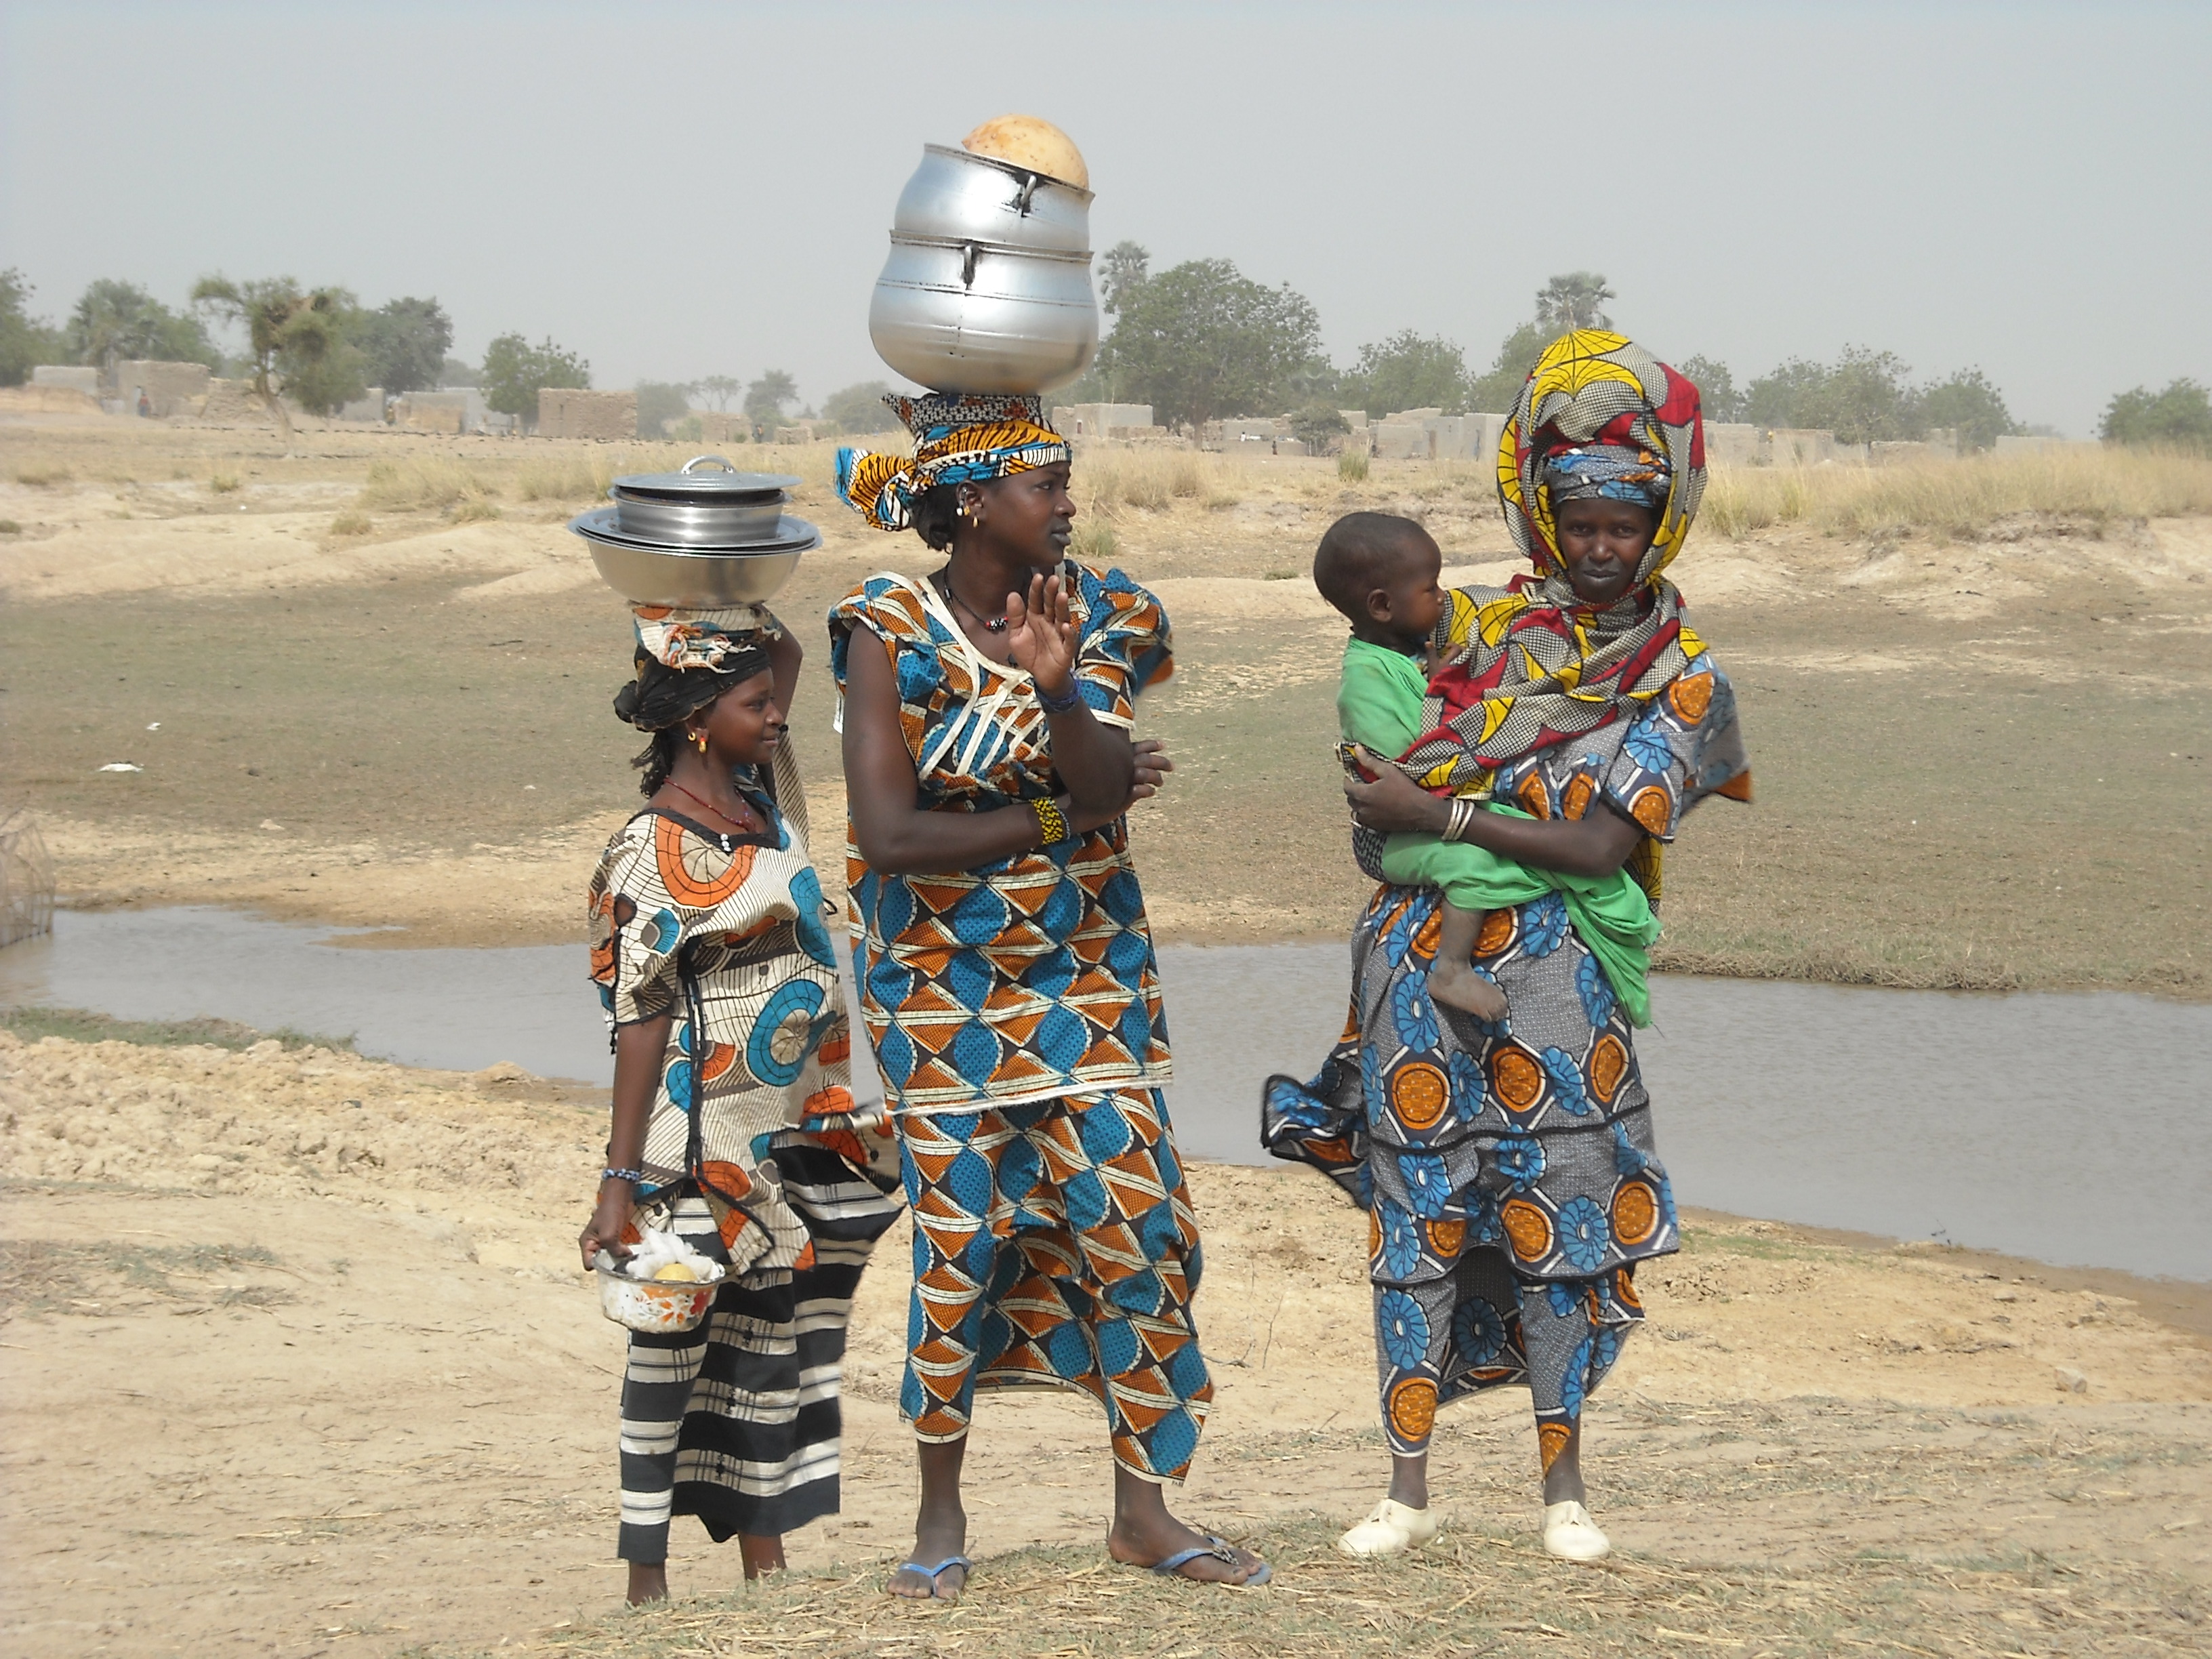 Porteuses d'eau au Mali - Crédits : Claire Nivon, François Lacharme